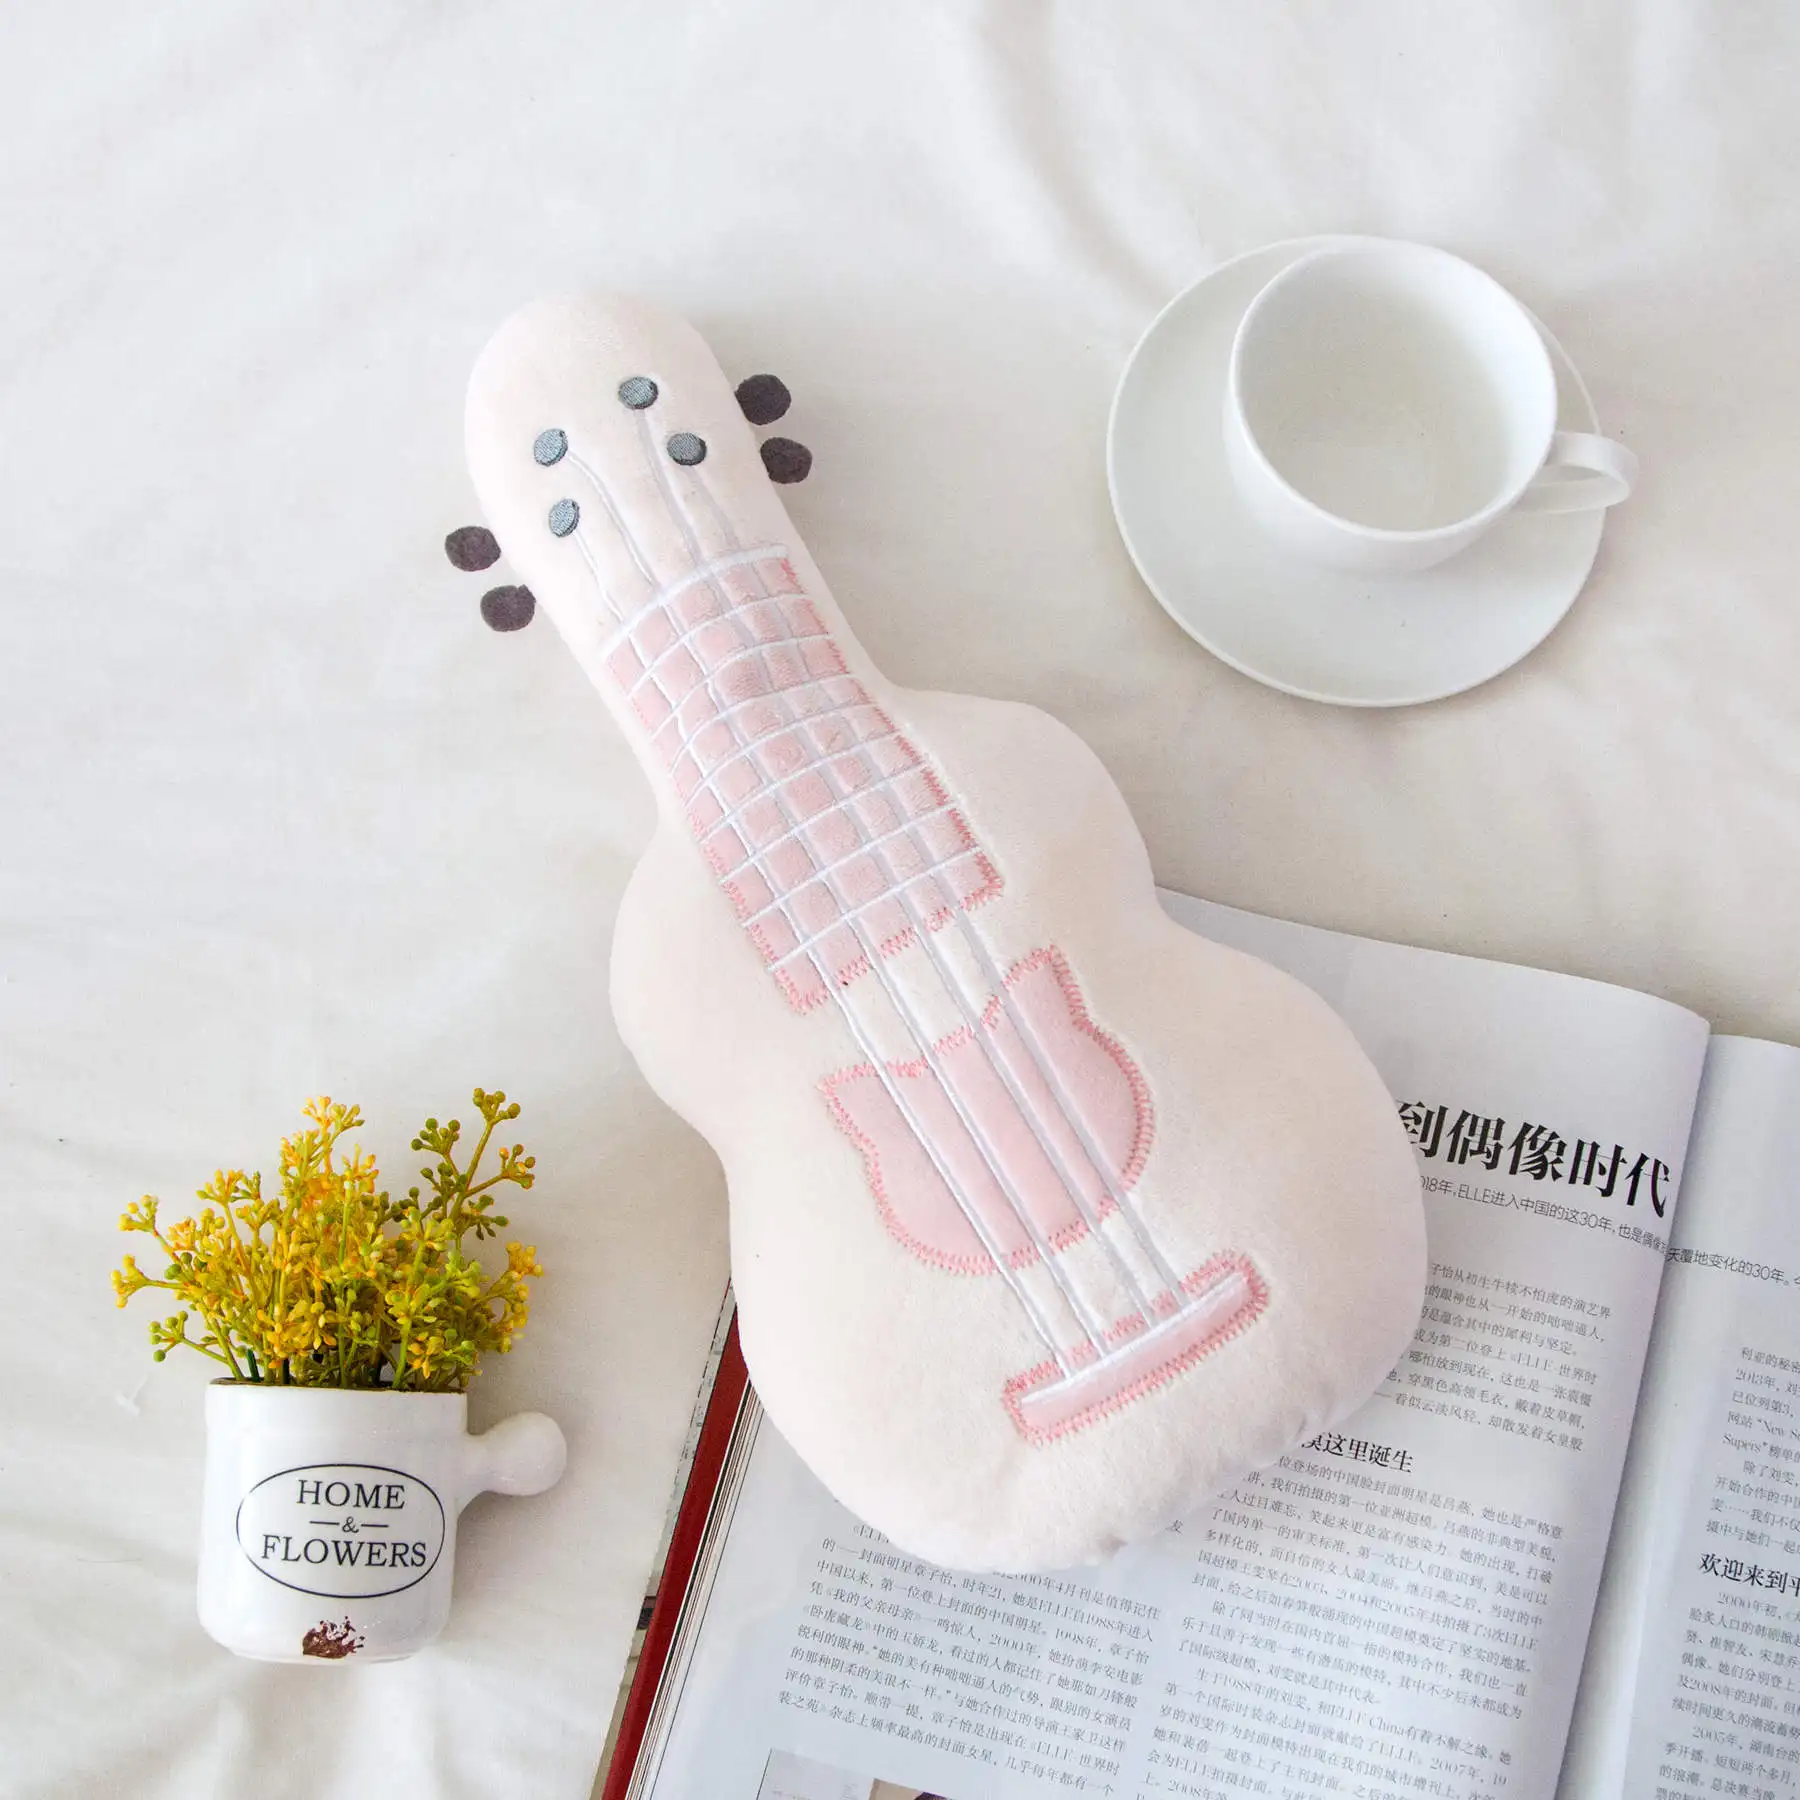 Моделирование 3D гитара плюшевая игрушка мягкая подушка модное милое украшение для дома текстиль постельные принадлежности подушки девушка подарок на день рождения Рождество - Цвет: Белый